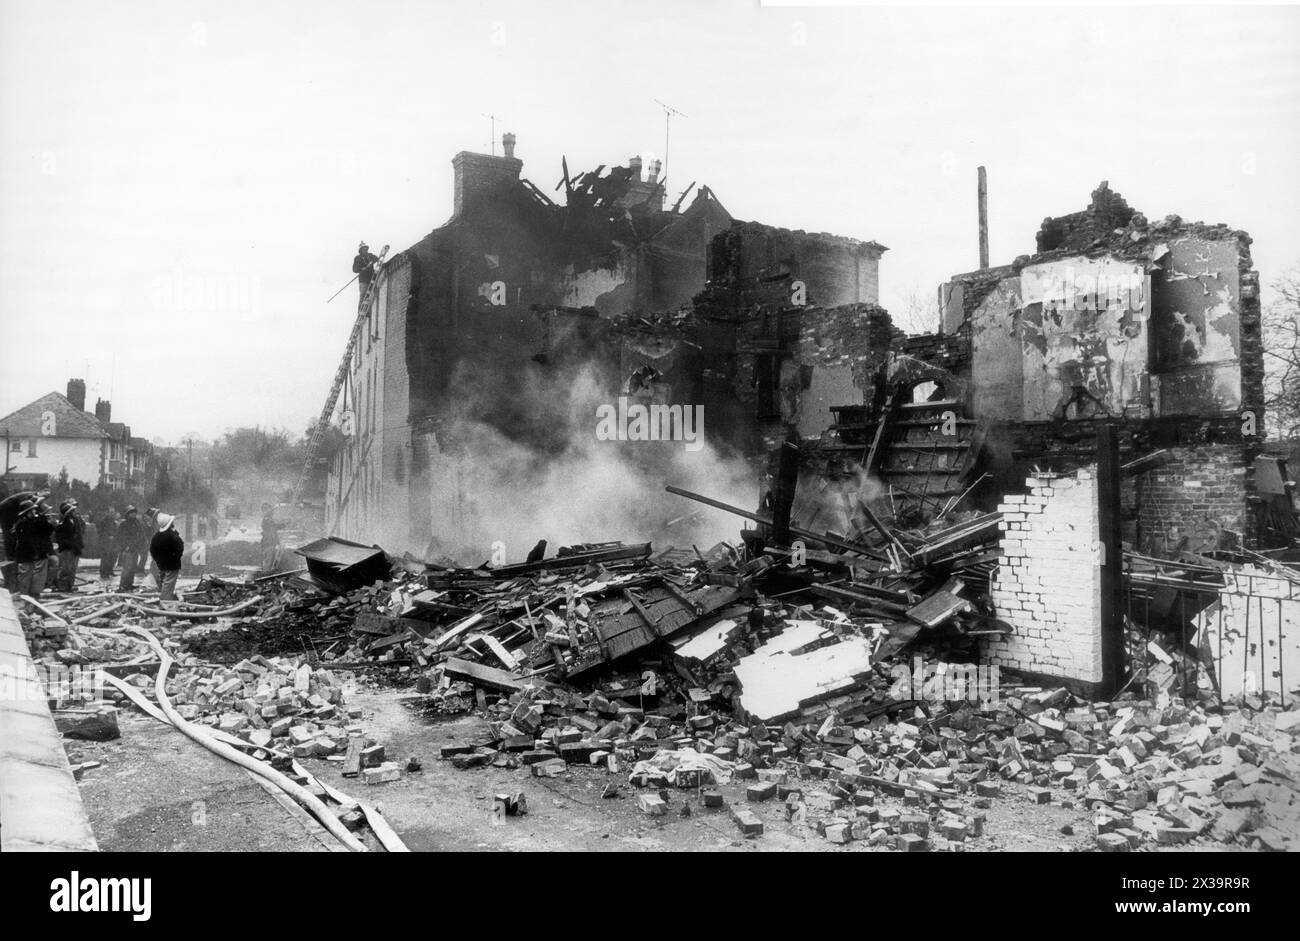 Case distrutte dall'esplosione di gas a Temeside, Ludlow, Shropshire 19 aprile 1973. Foto di David Bagnall Foto Stock